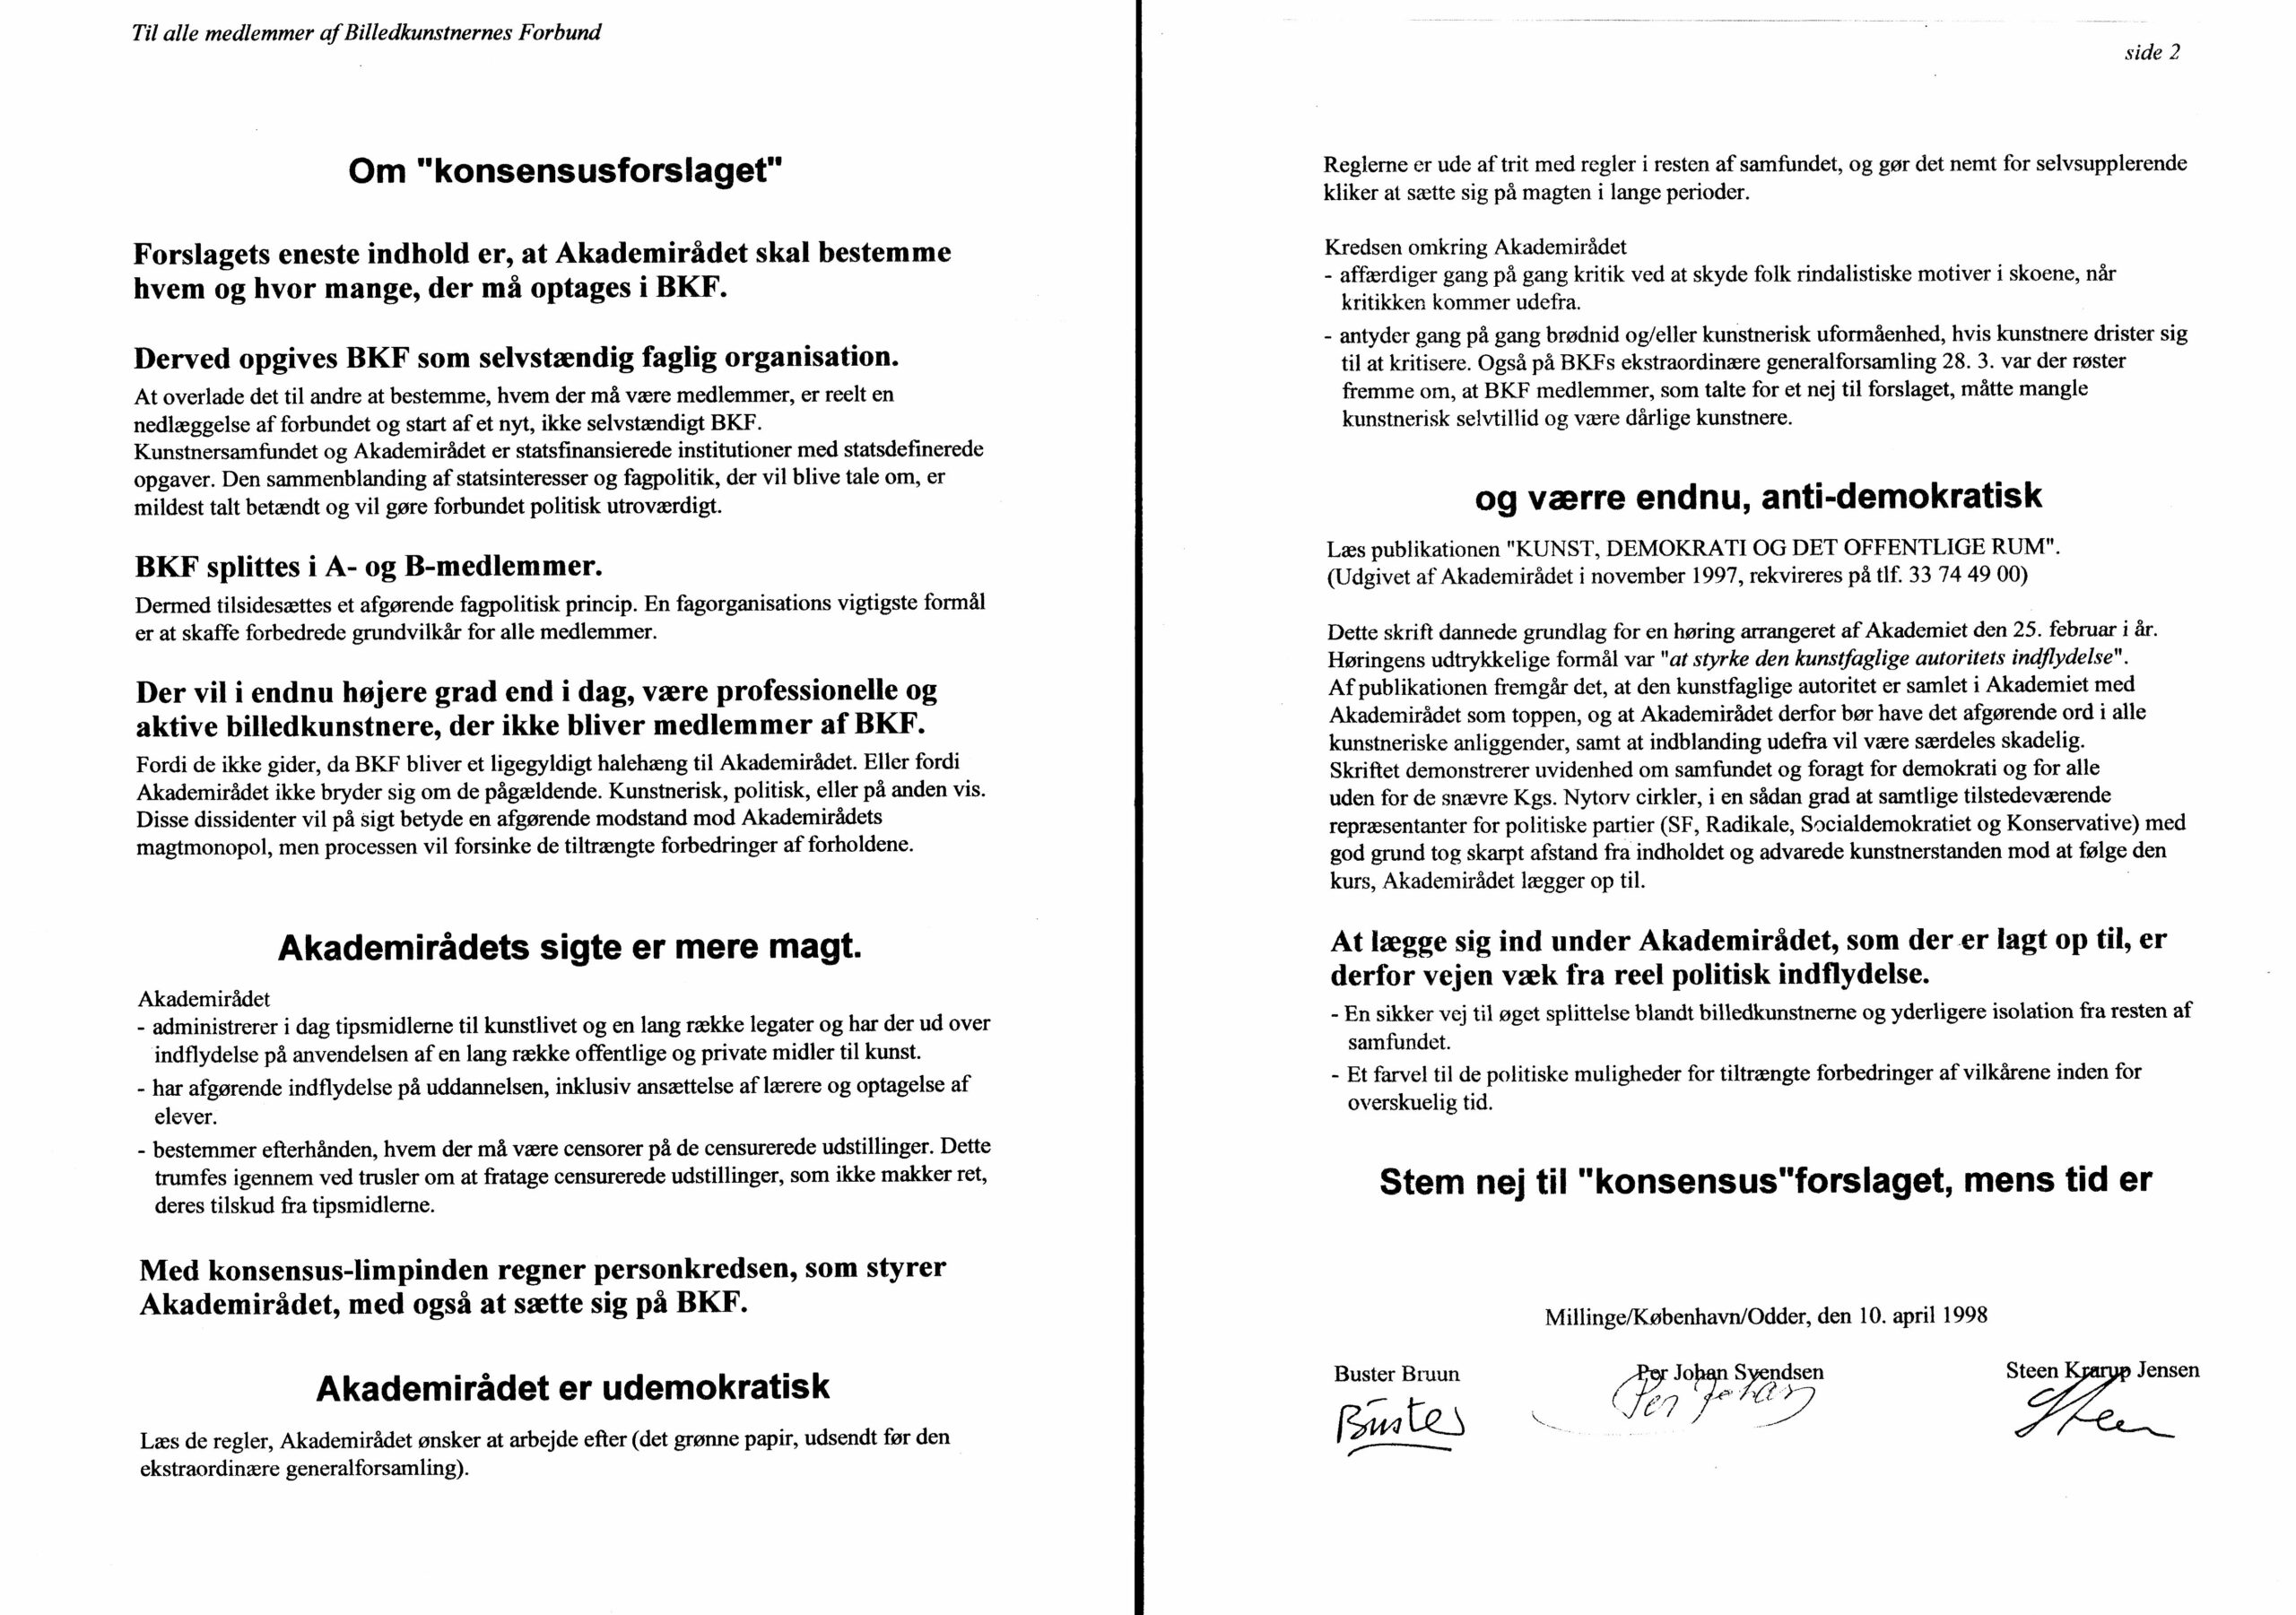 OM KONSENSUSFORSLAGET. Pressemeddelelse. Buster Bruun, Per Johan Svendsen, Steen Krarup Jensen. Medio april 1998.